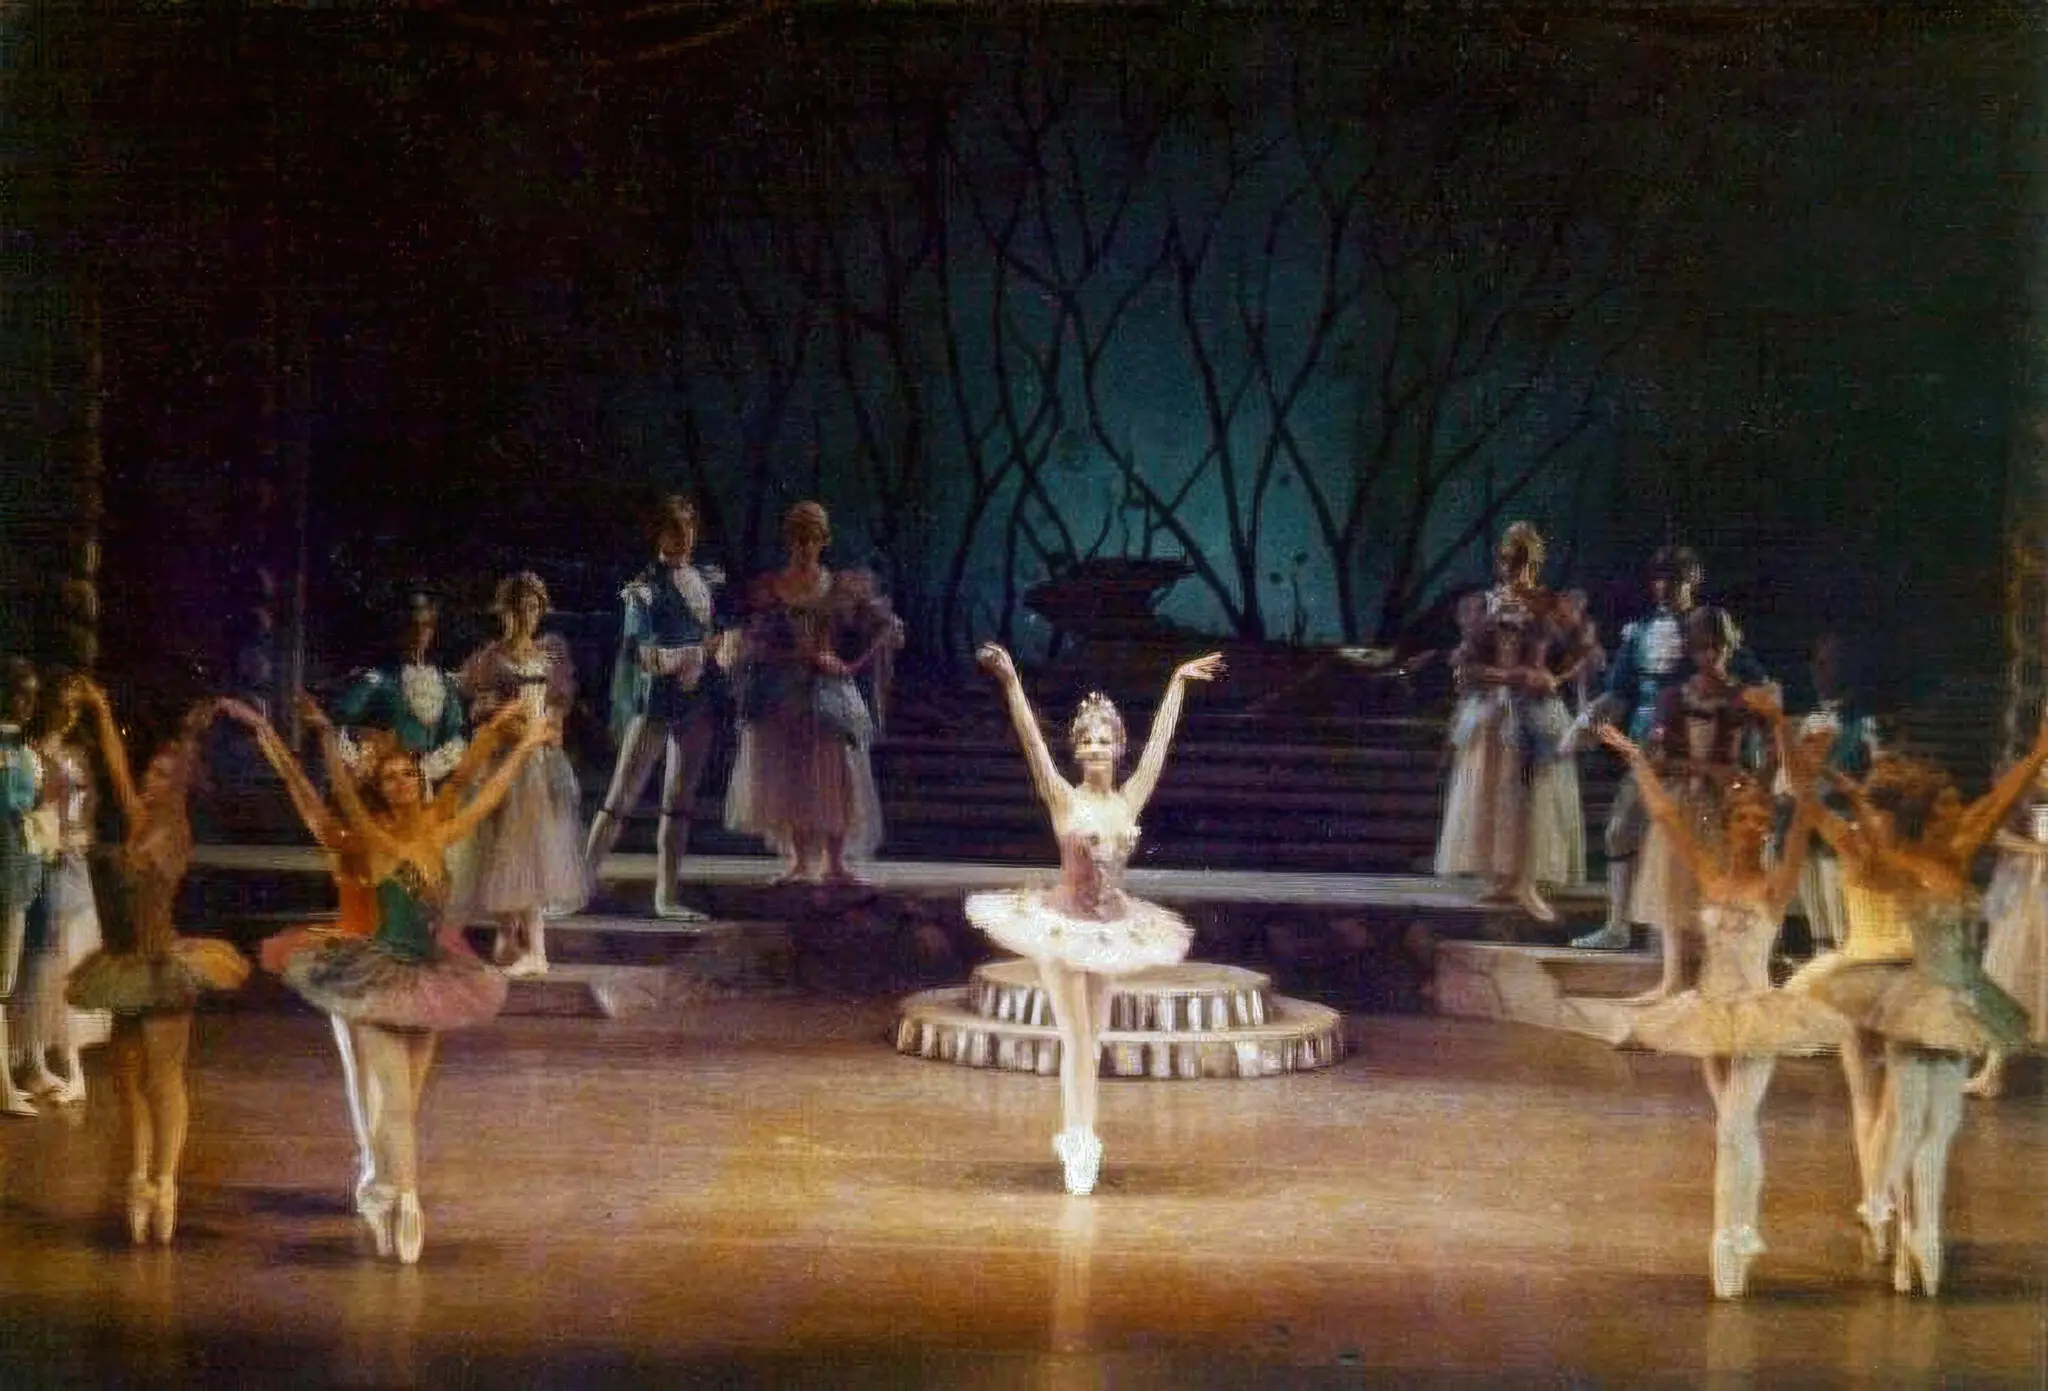 Запрещенное искусство – история балета в Иране